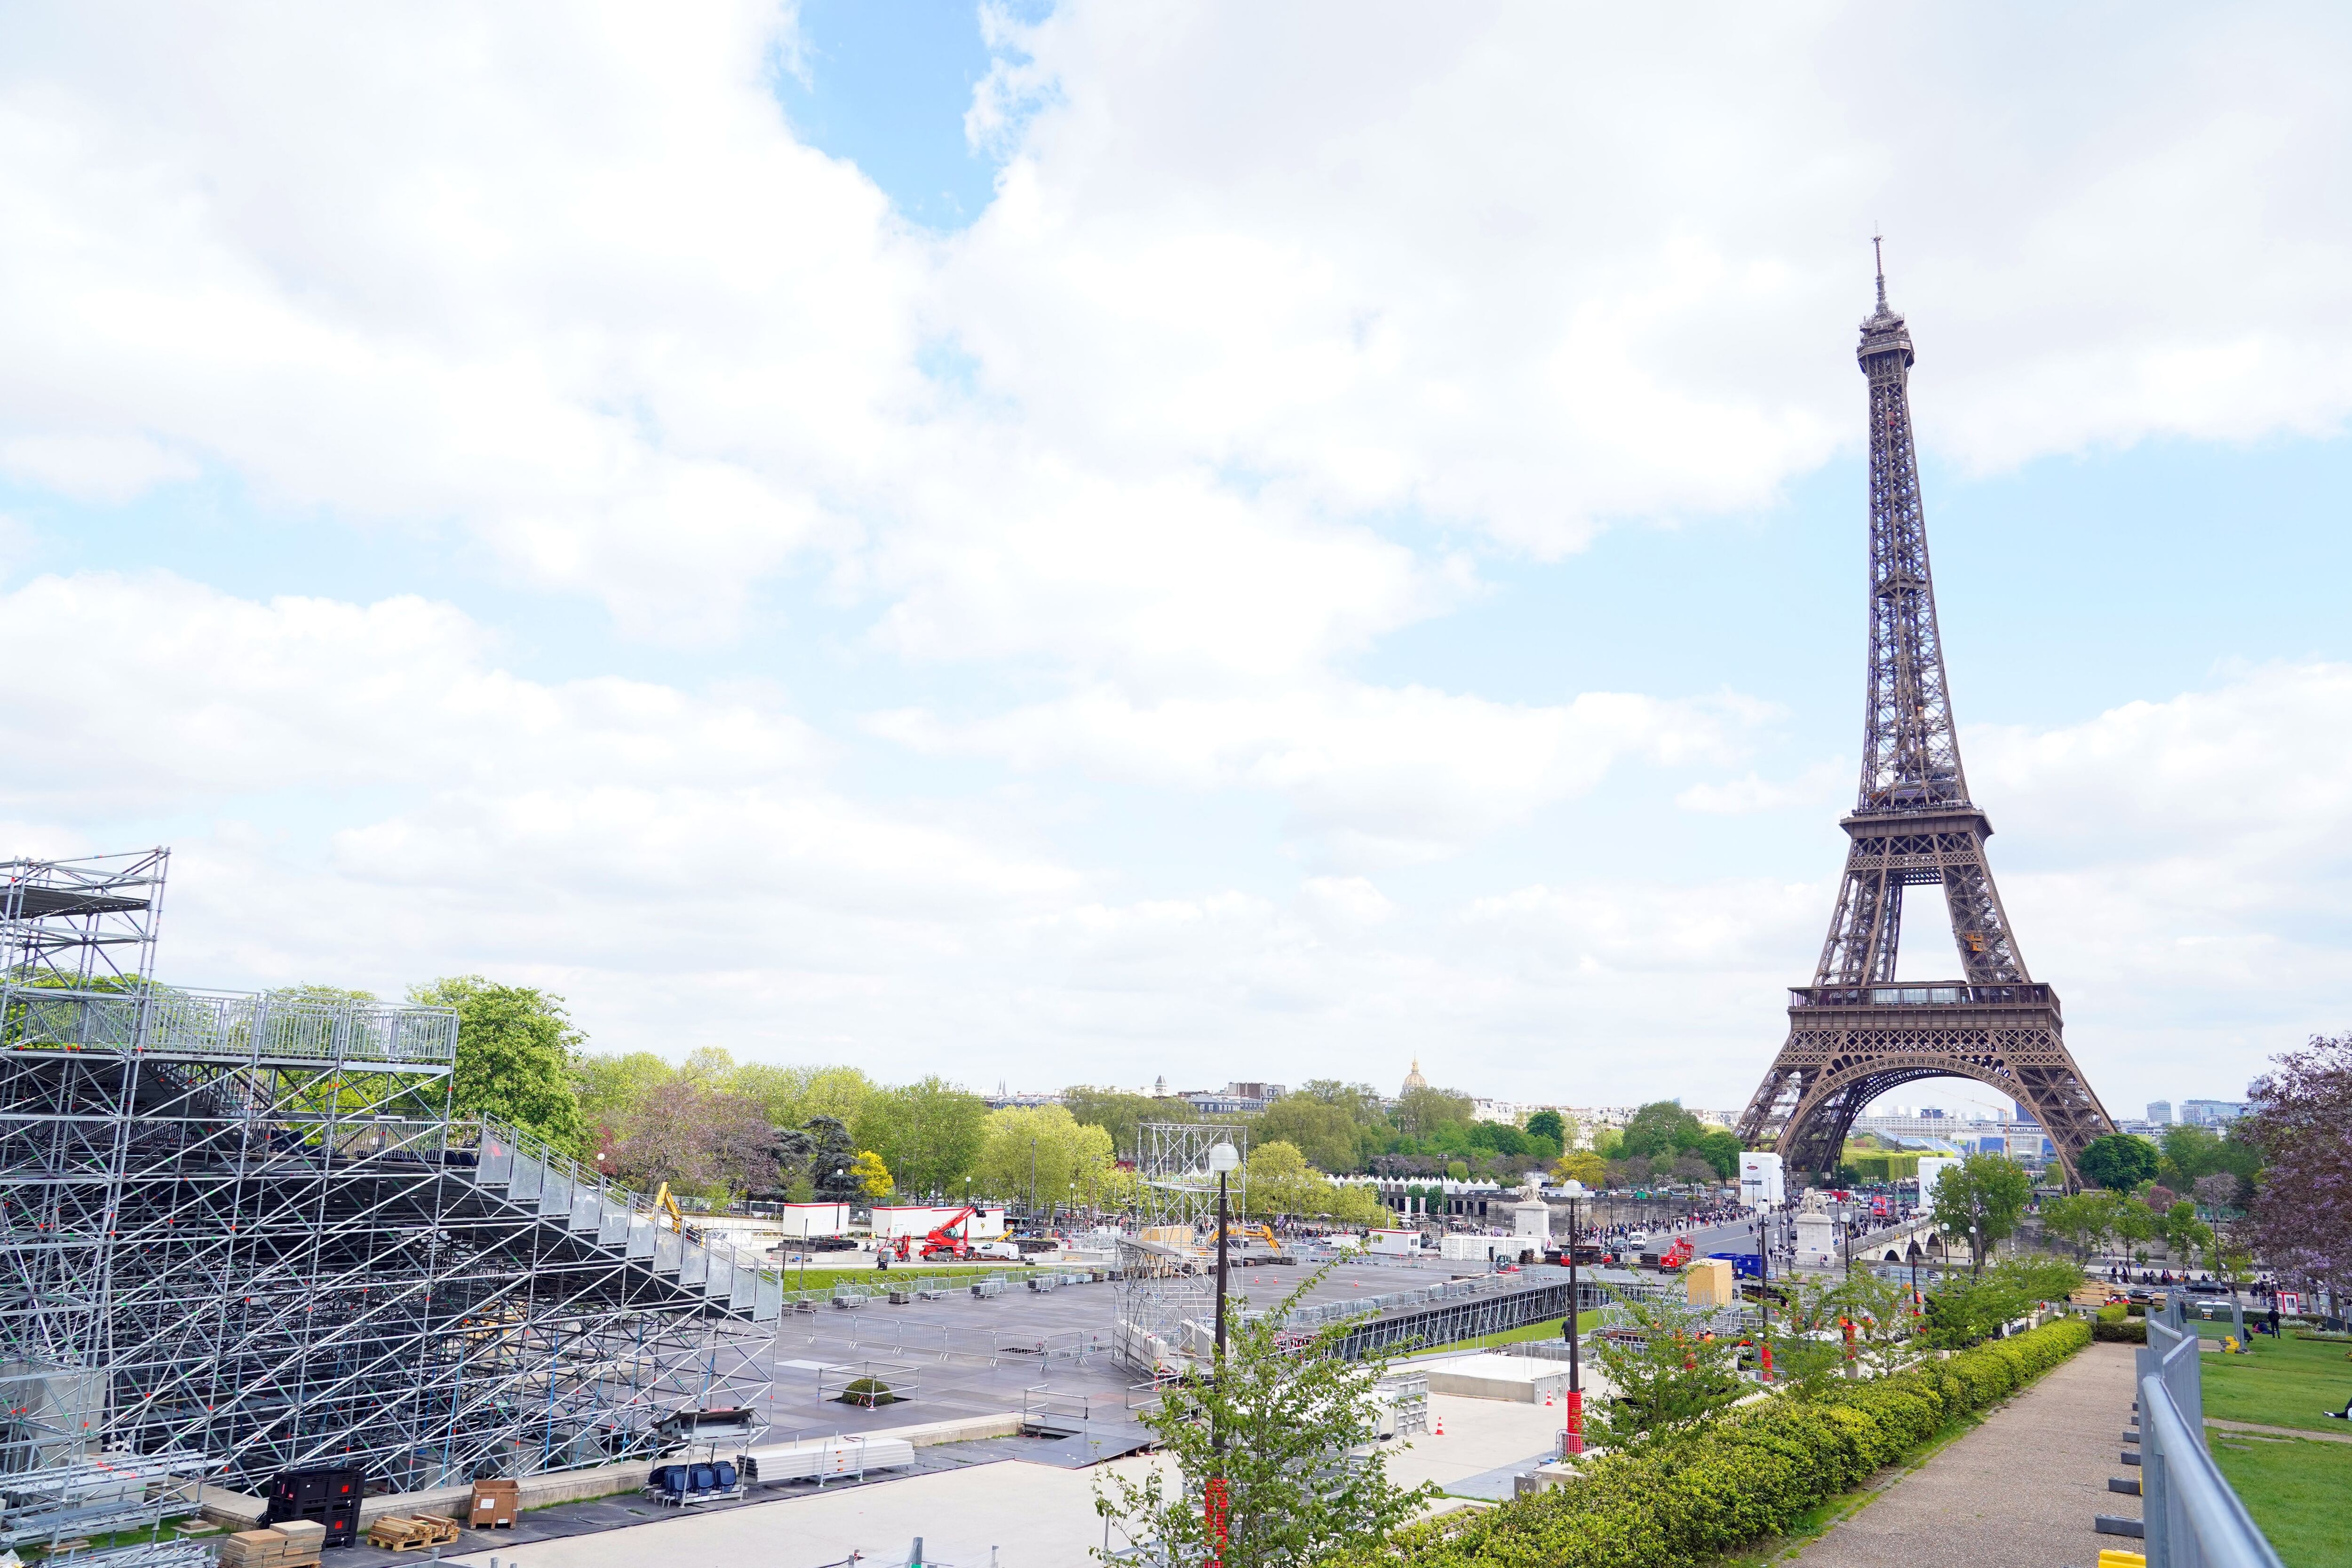 La ciudad de París, Francia, se prepara para recibir por tercera  oportunidad unos Juegos Olímpicos, luego de ser sede en 1900 y 1924. La Torre Eiffel será escenario de diferentes eventos deportivos.